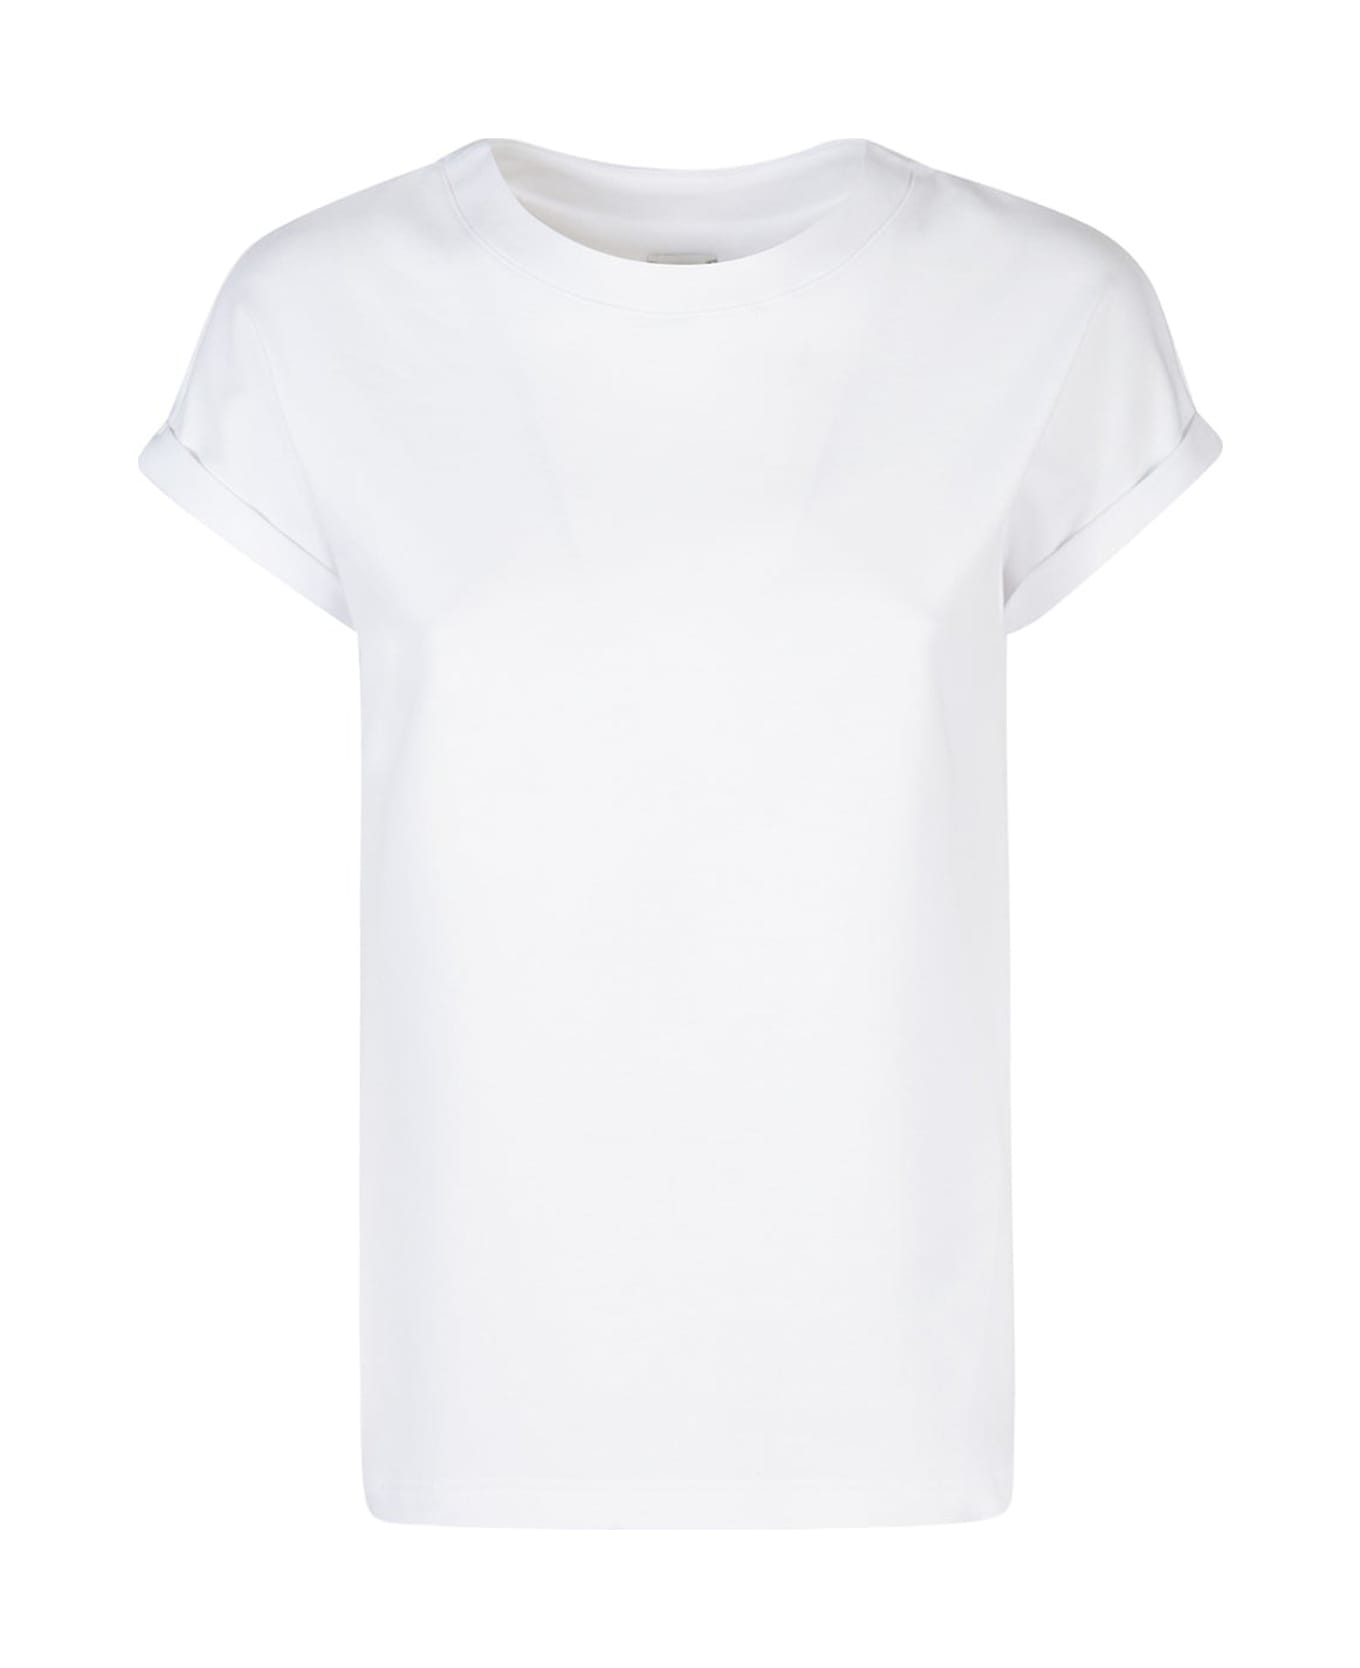 Eleventy White Cotton T-shirt - BIANCO Tシャツ